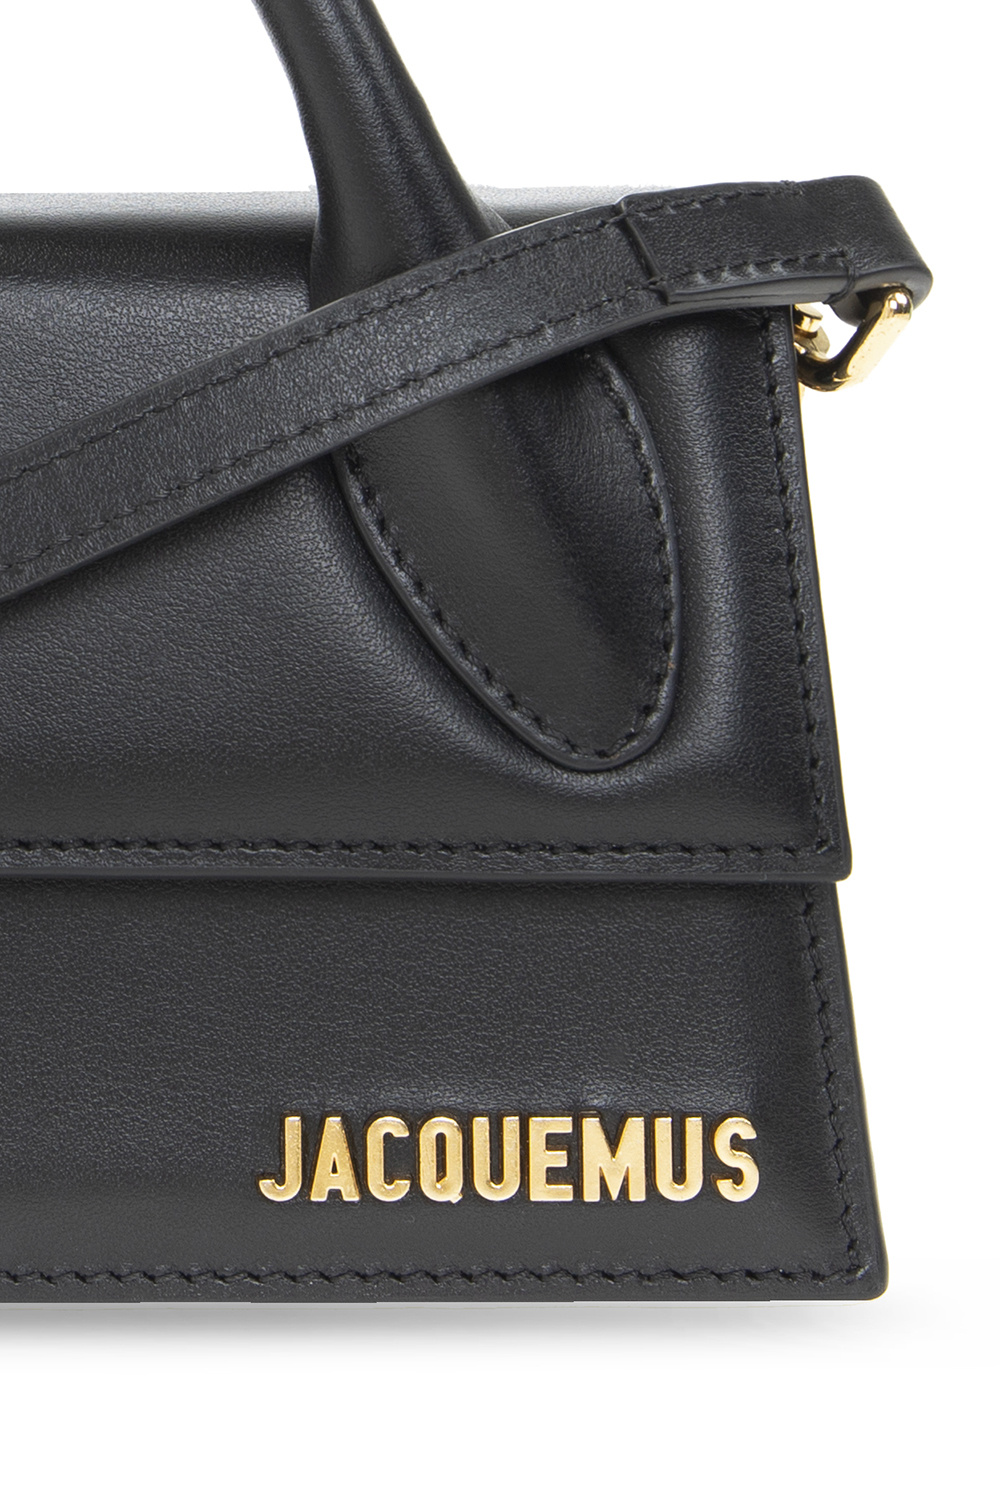 Jacquemus - Beige Le Papier 'Le Chiquito Long' Bag